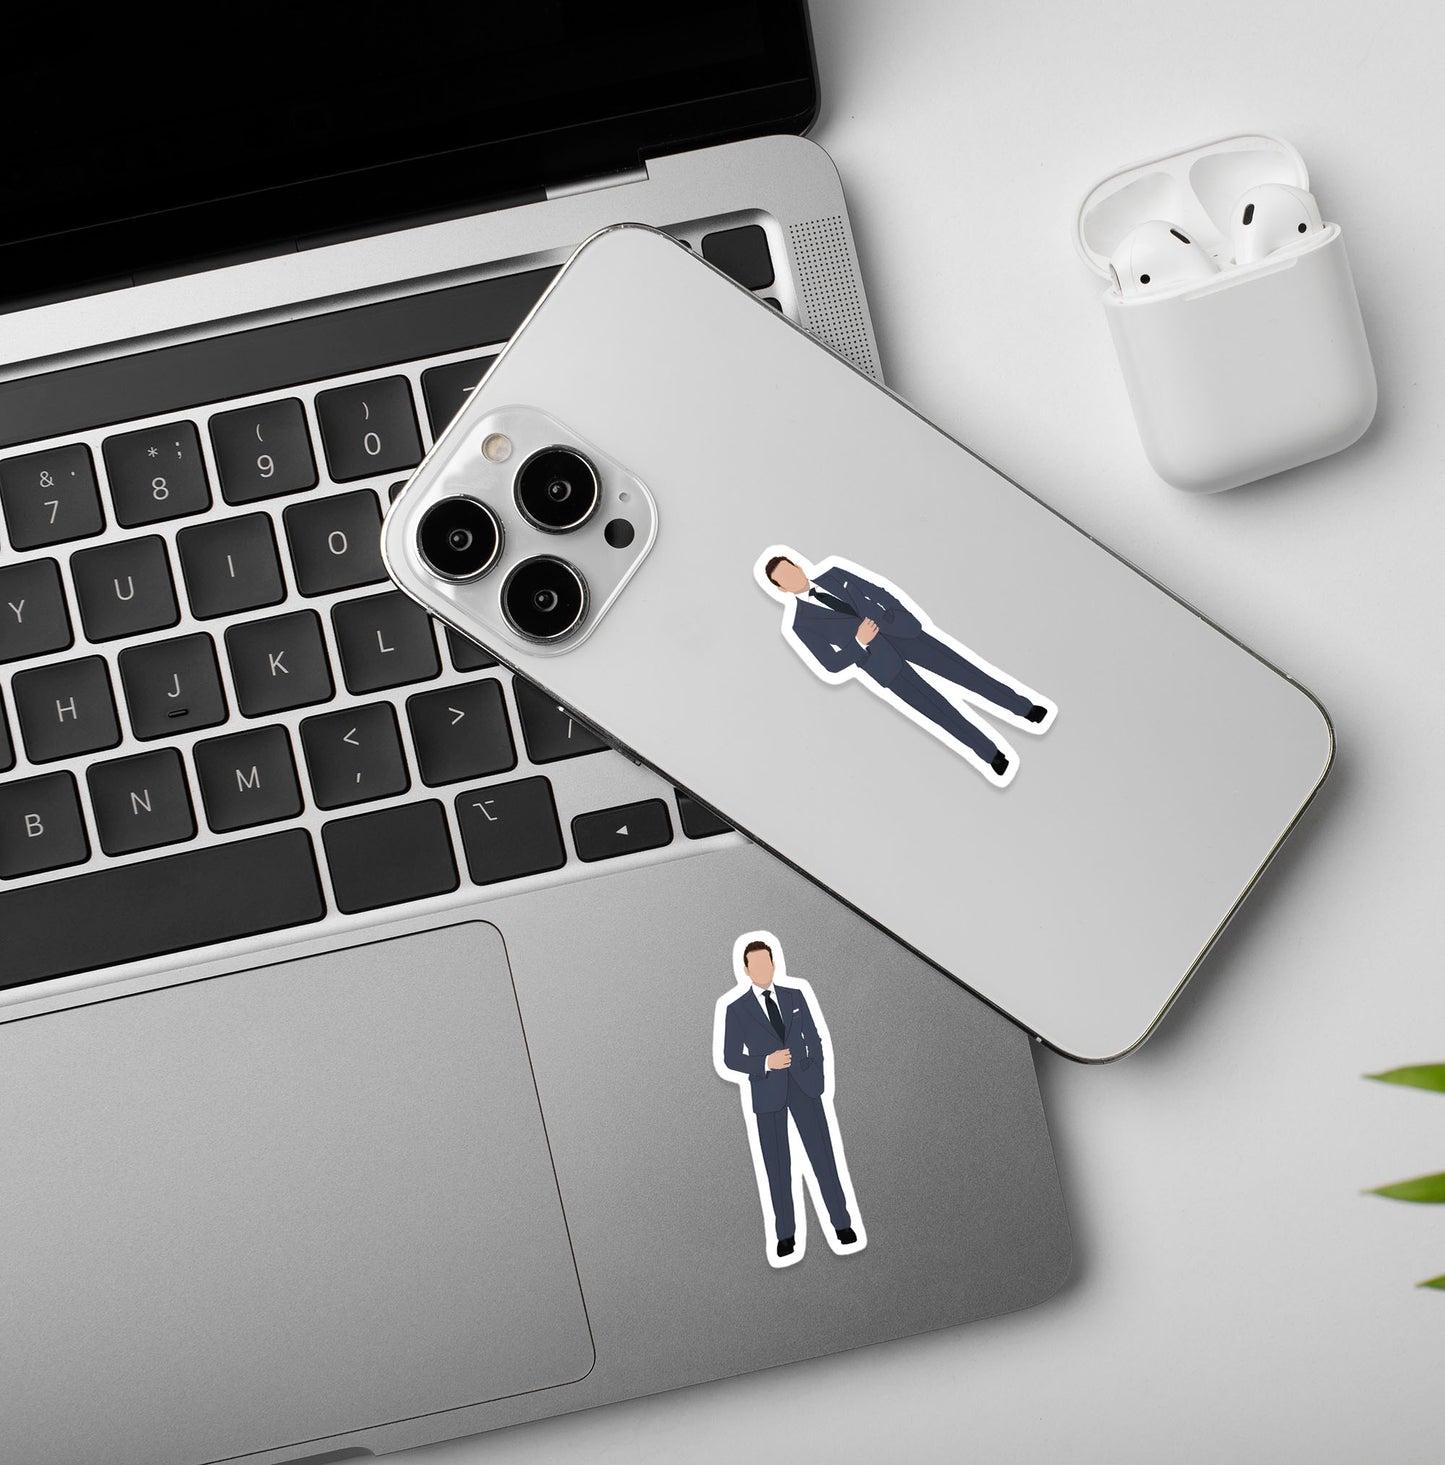 Harvey Specter | Suits - Laptop / Mobile Sticker